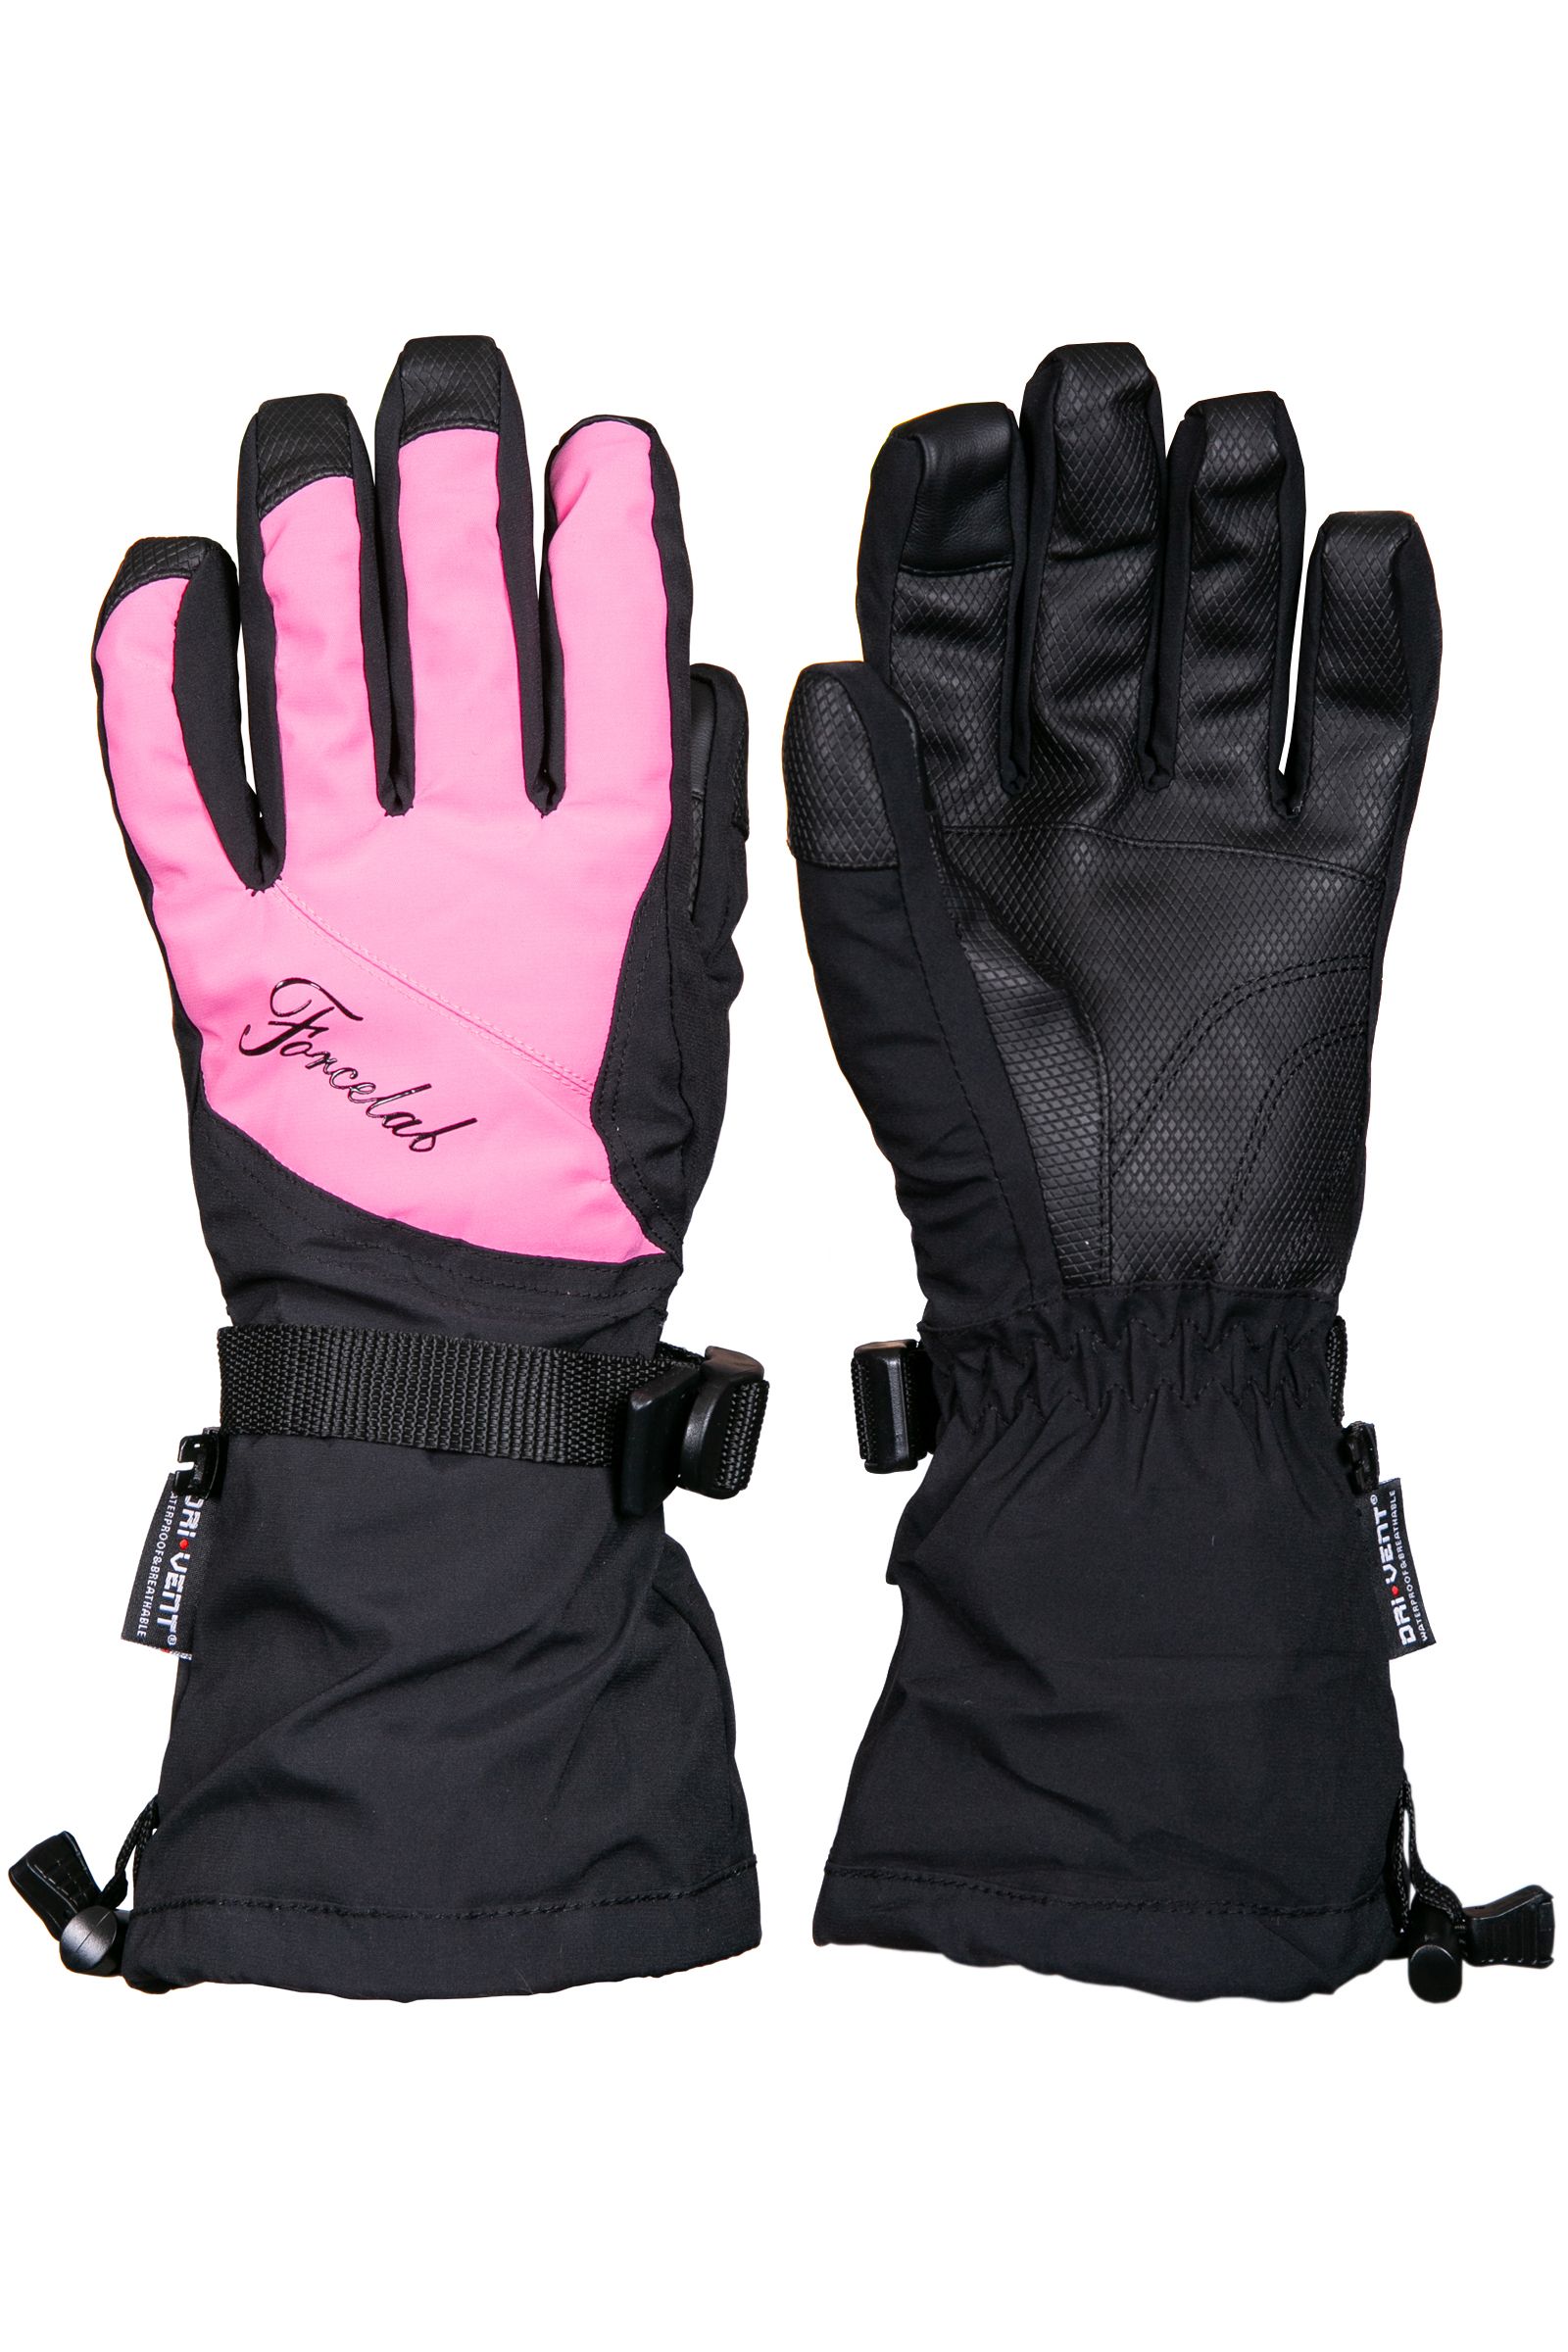 Перчатки женские горнолыжные Forcelab706640 темно-розовый р-р 7